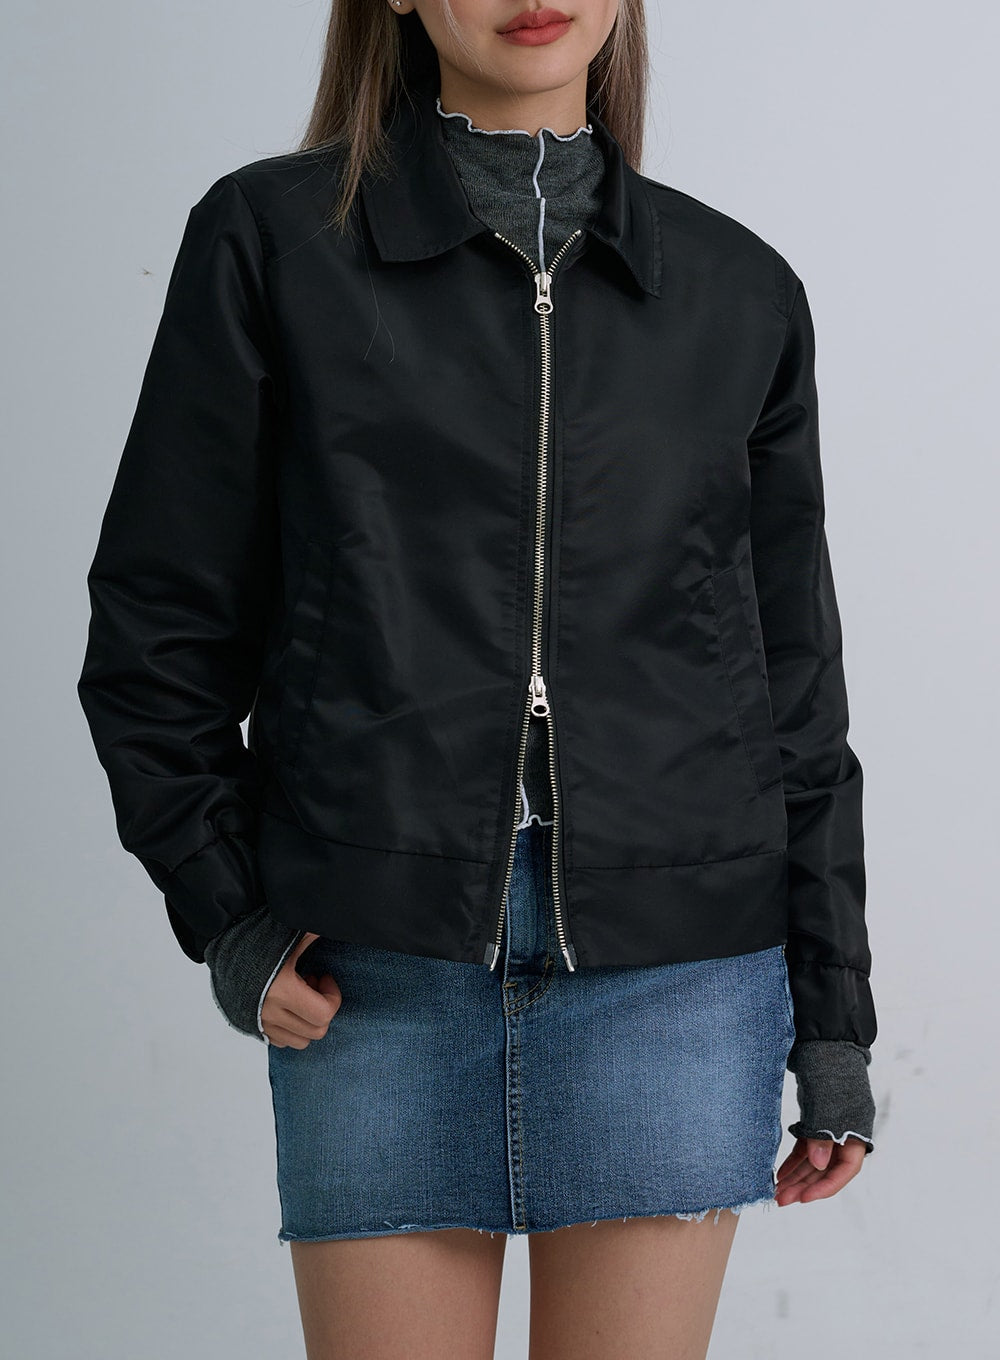 LEWKIN Two Way Zipper Jacket CO21 - Gray S/M